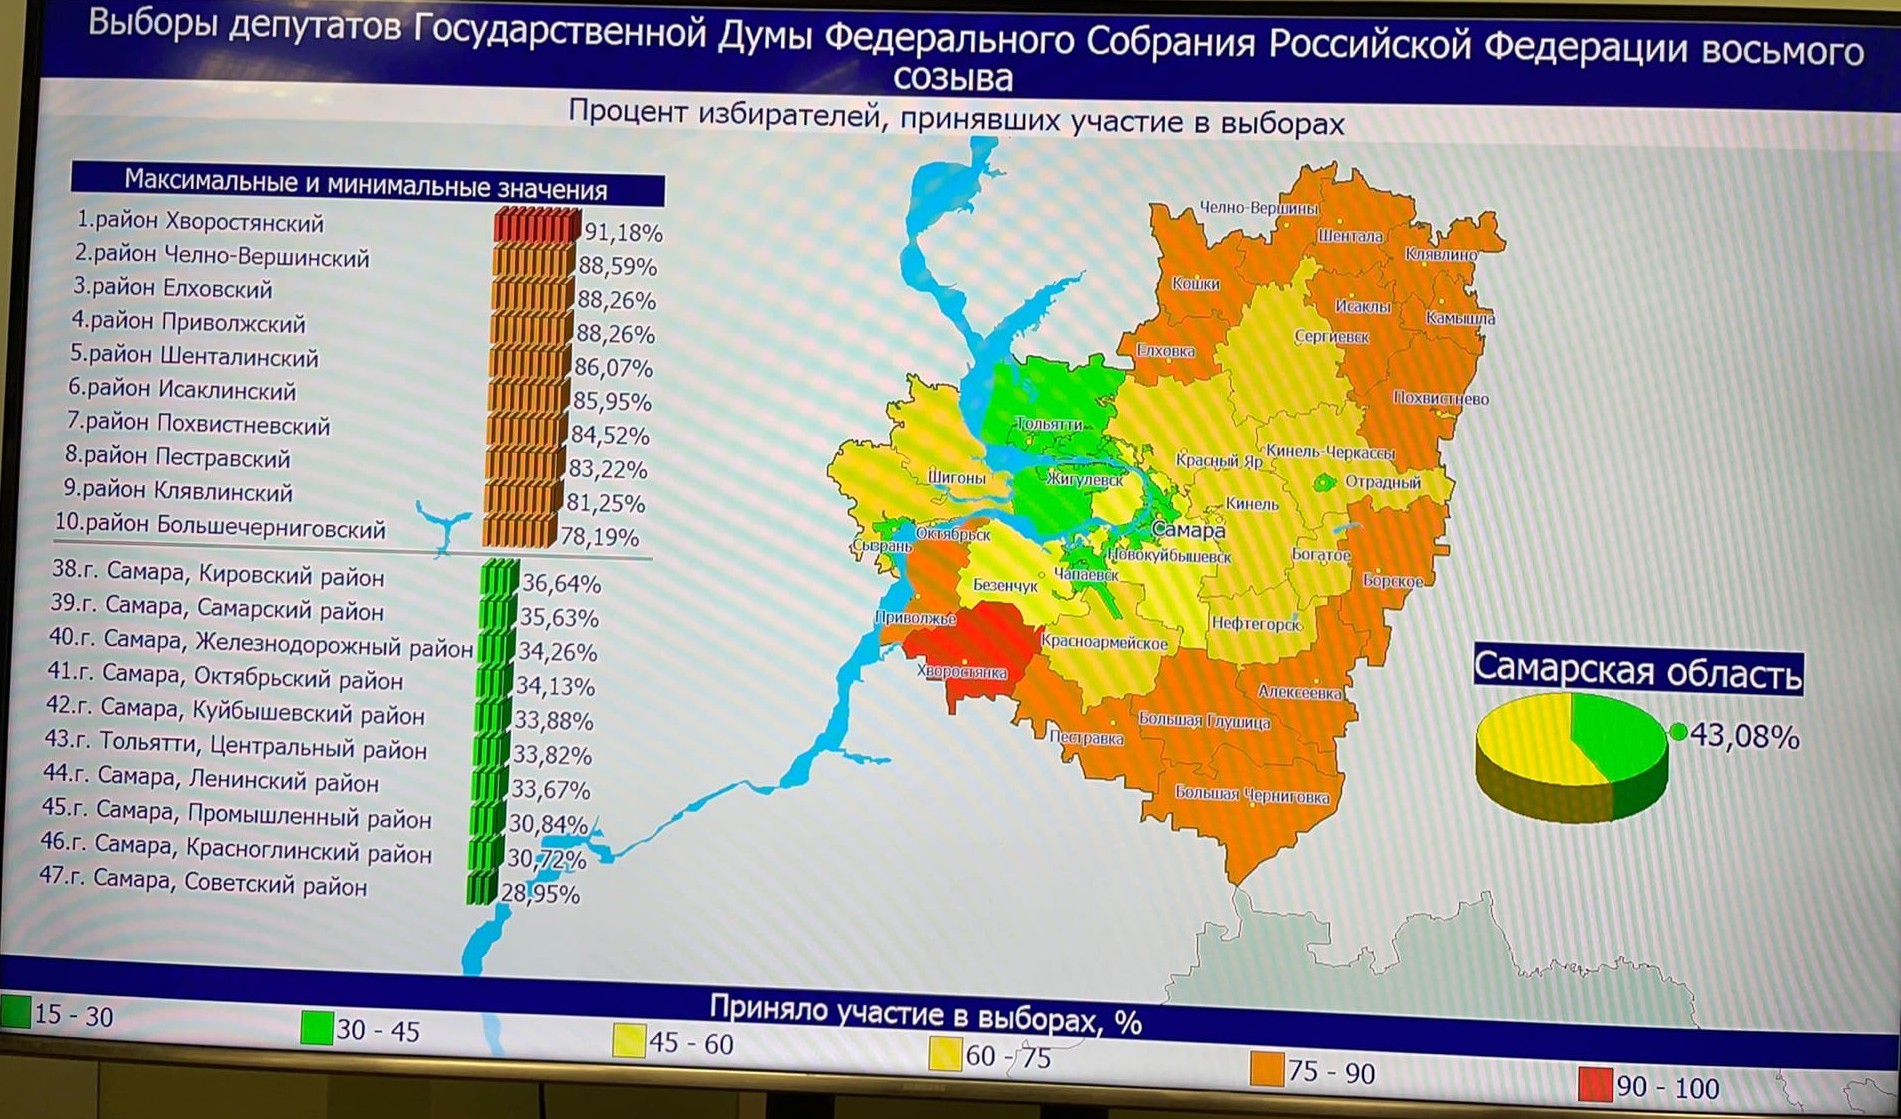 Результаты викторины на выборах в самарской области